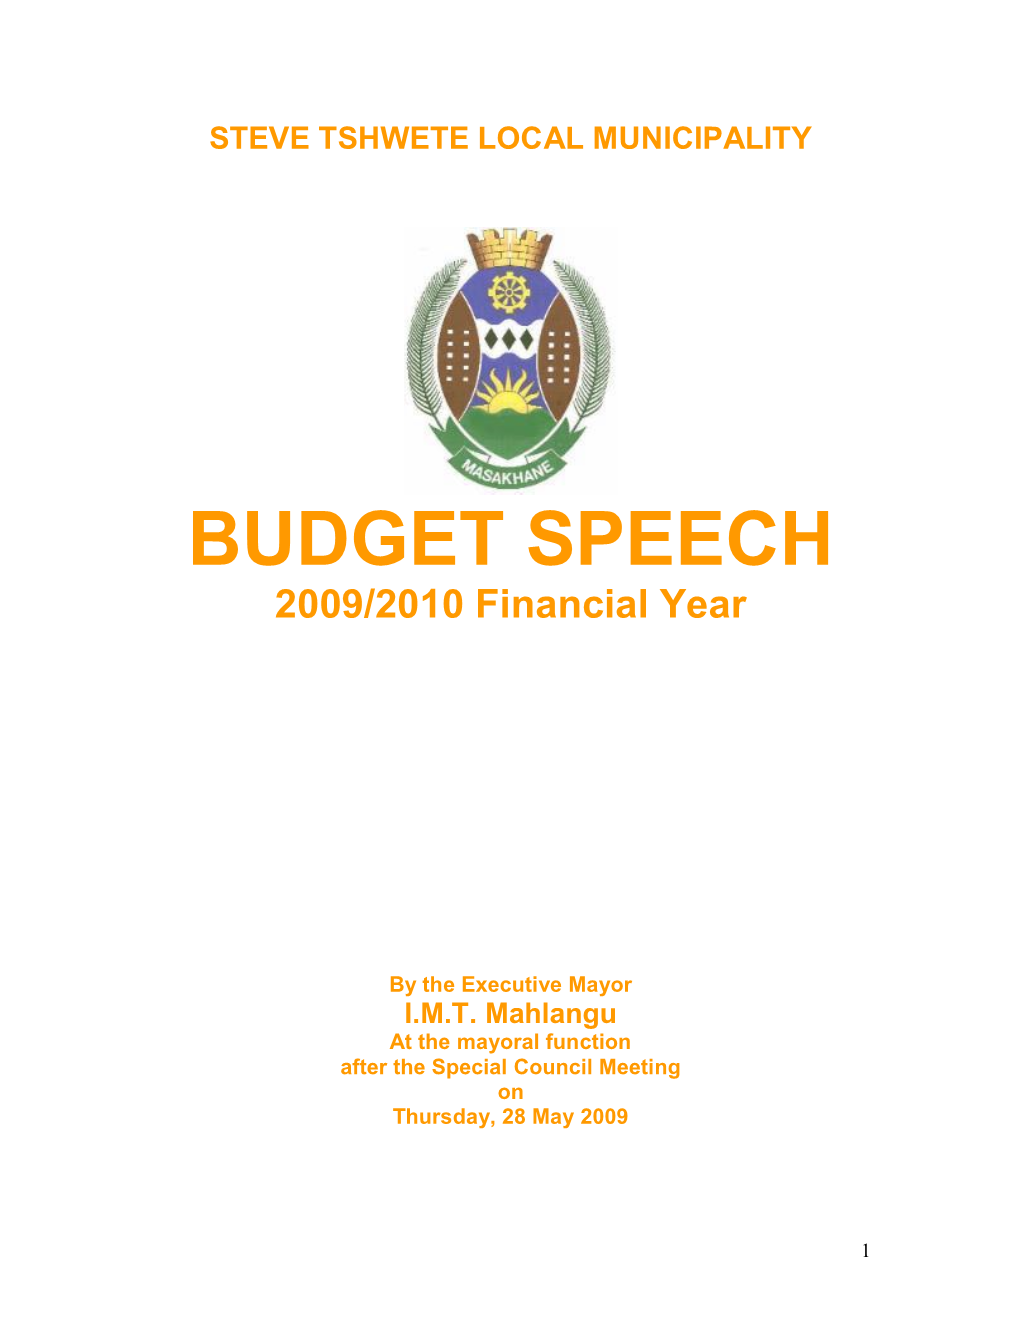 BUDGET SPEECH 2009/2010 Financial Year